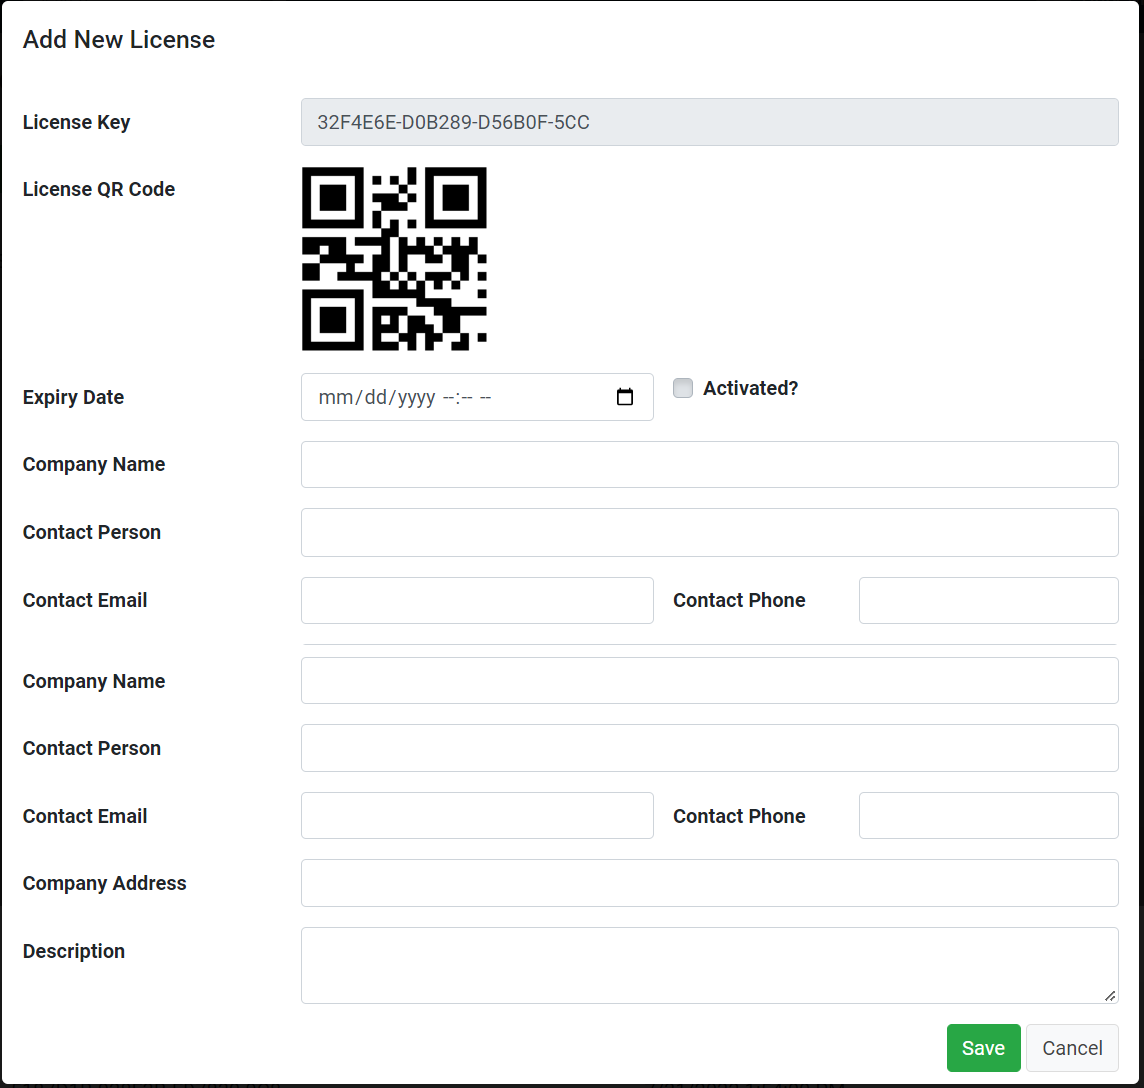 Application mobile POS pour Android et iOS avec tableau de bord Web de gestion des licences - 5